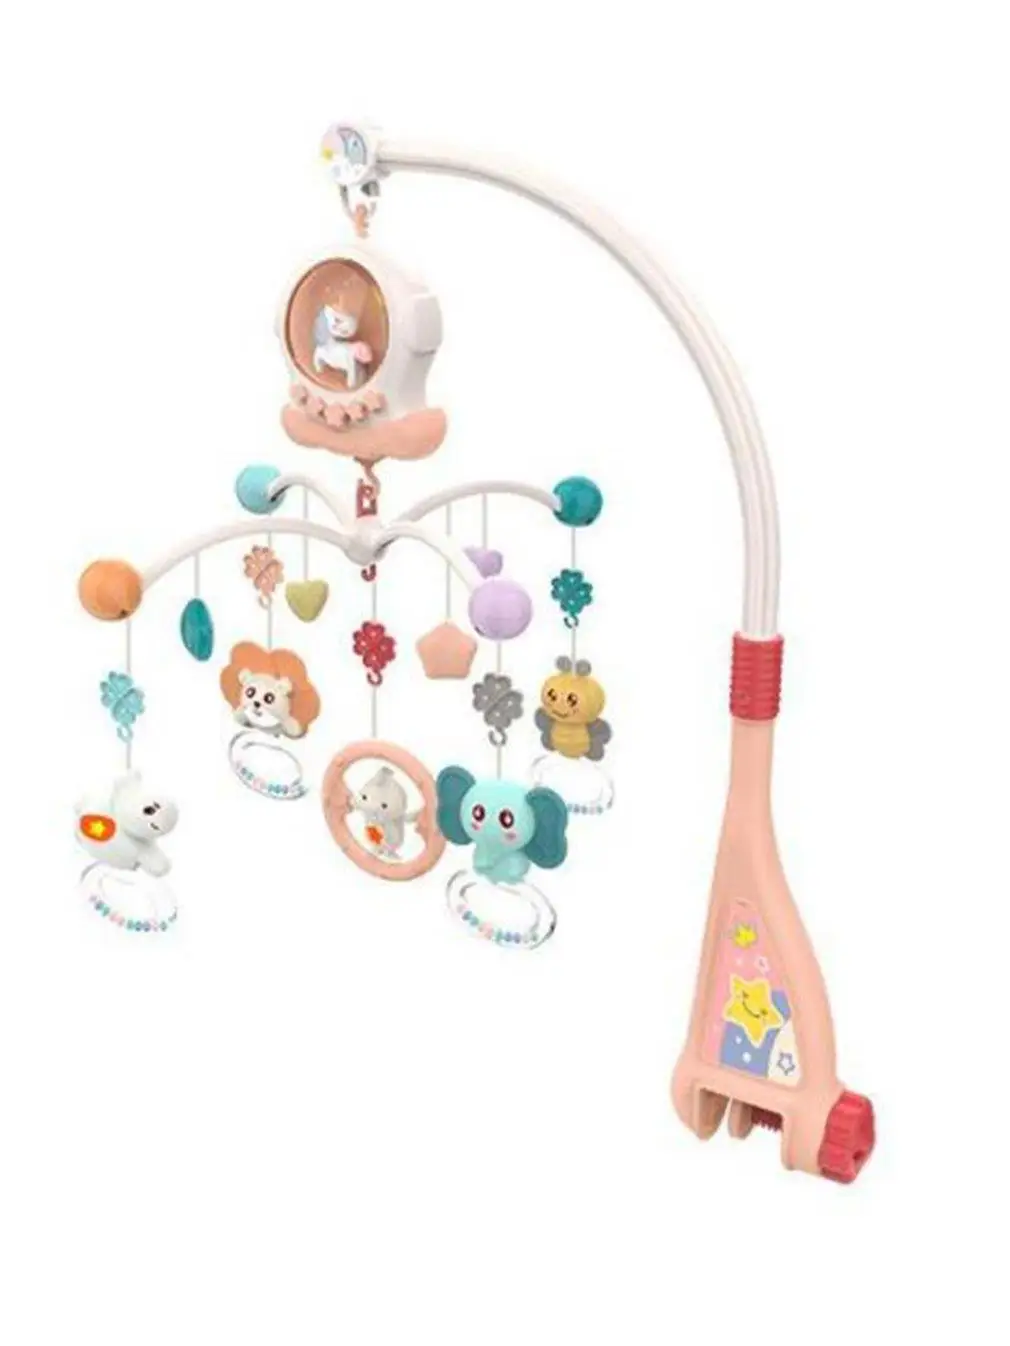 

Детские регулируемые погремушки 0-12 месяцев, музыкальная вращающаяся детская мягкая игрушка со сладкой музыкой или звуком